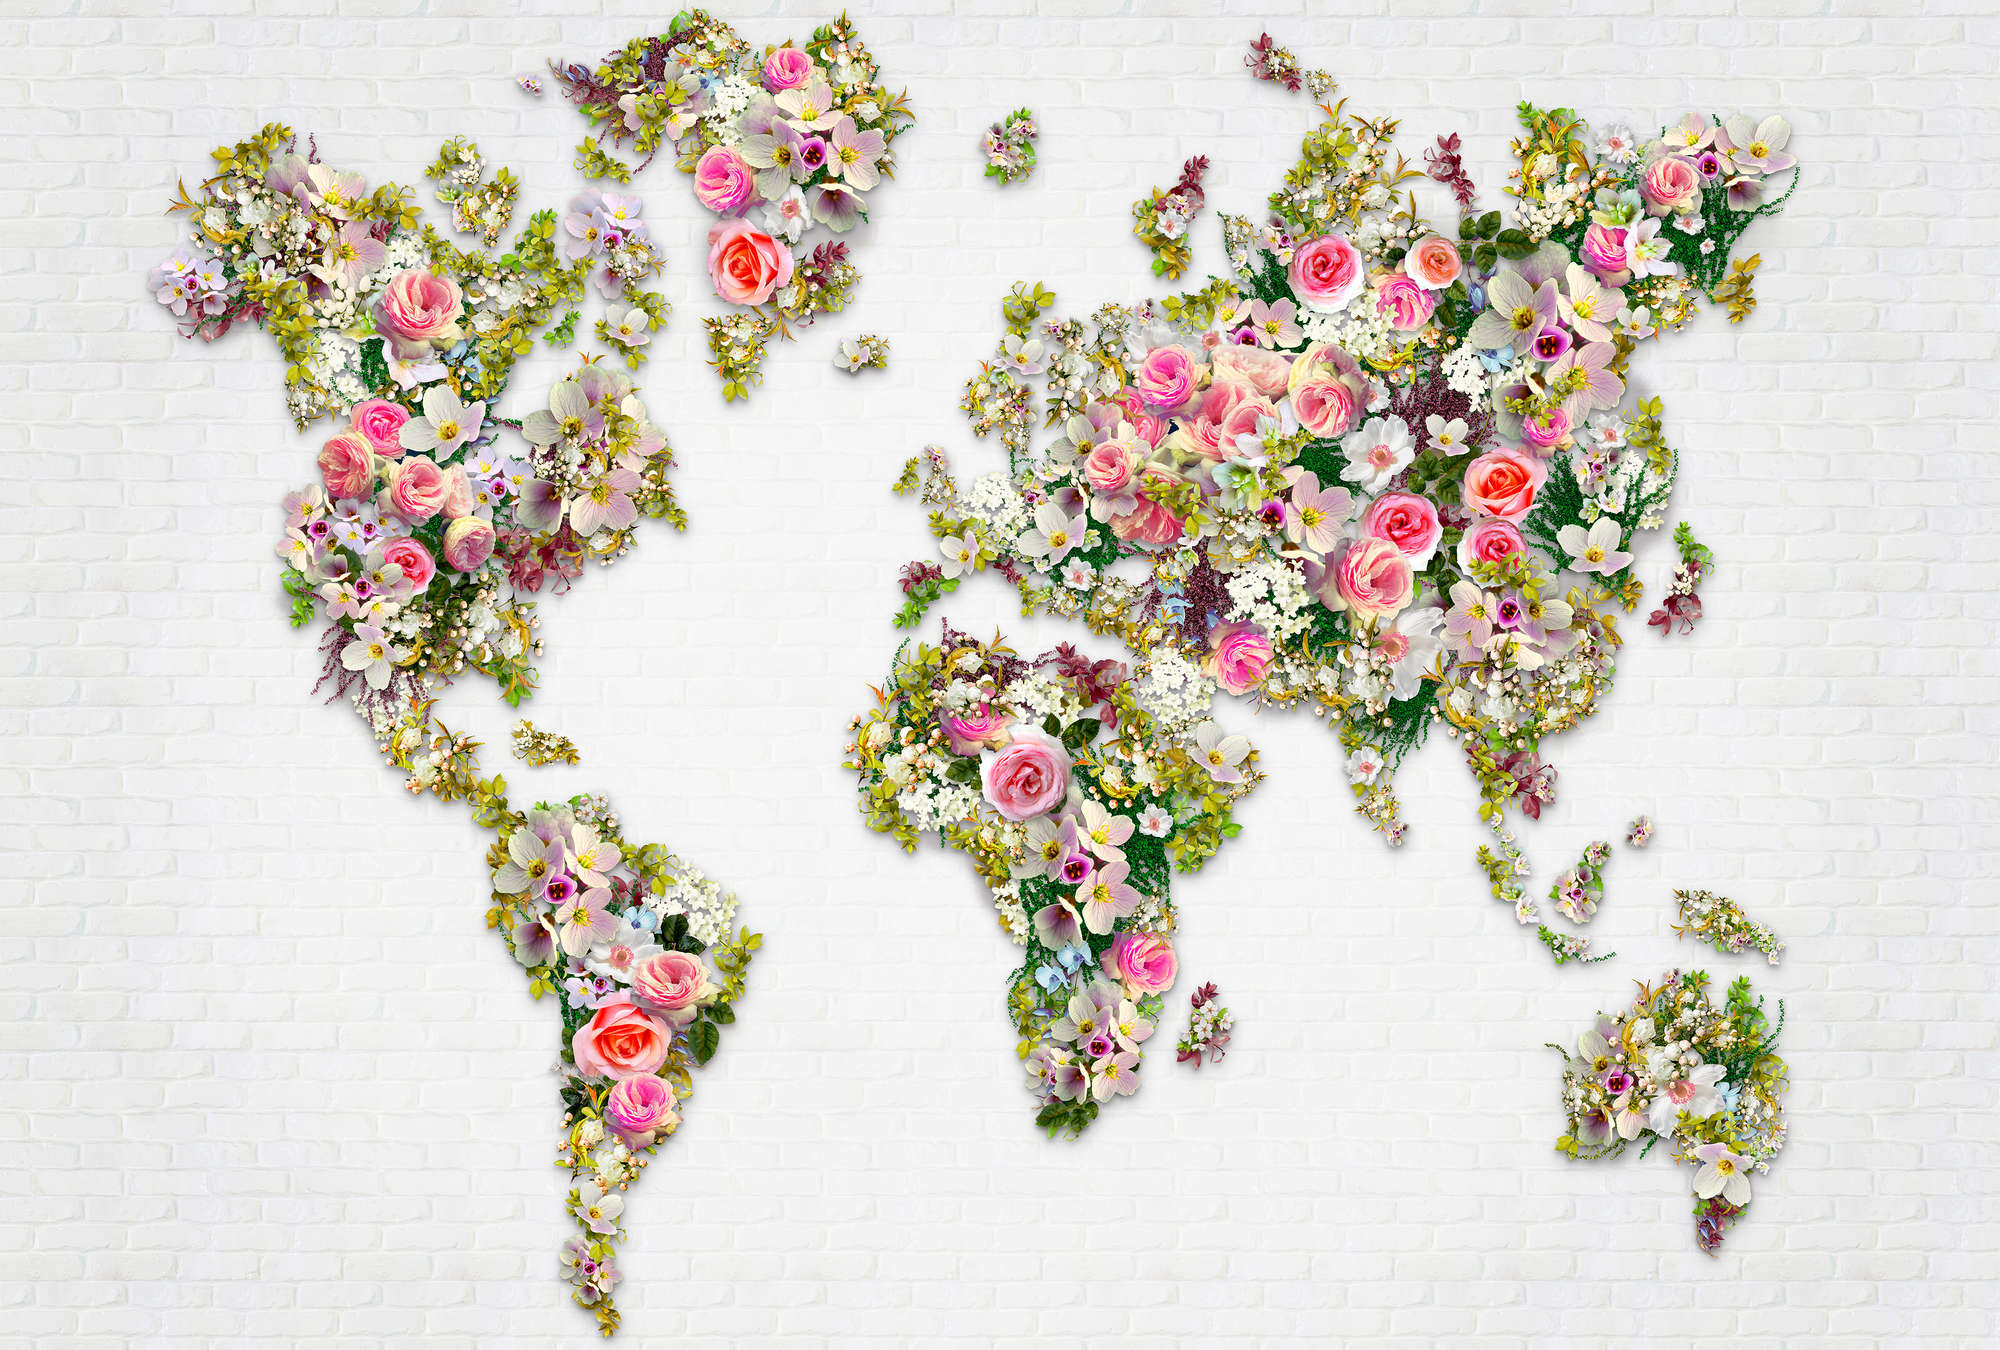             Mural Roses & Blossoms como mapa del mundo en una pared blanca
        